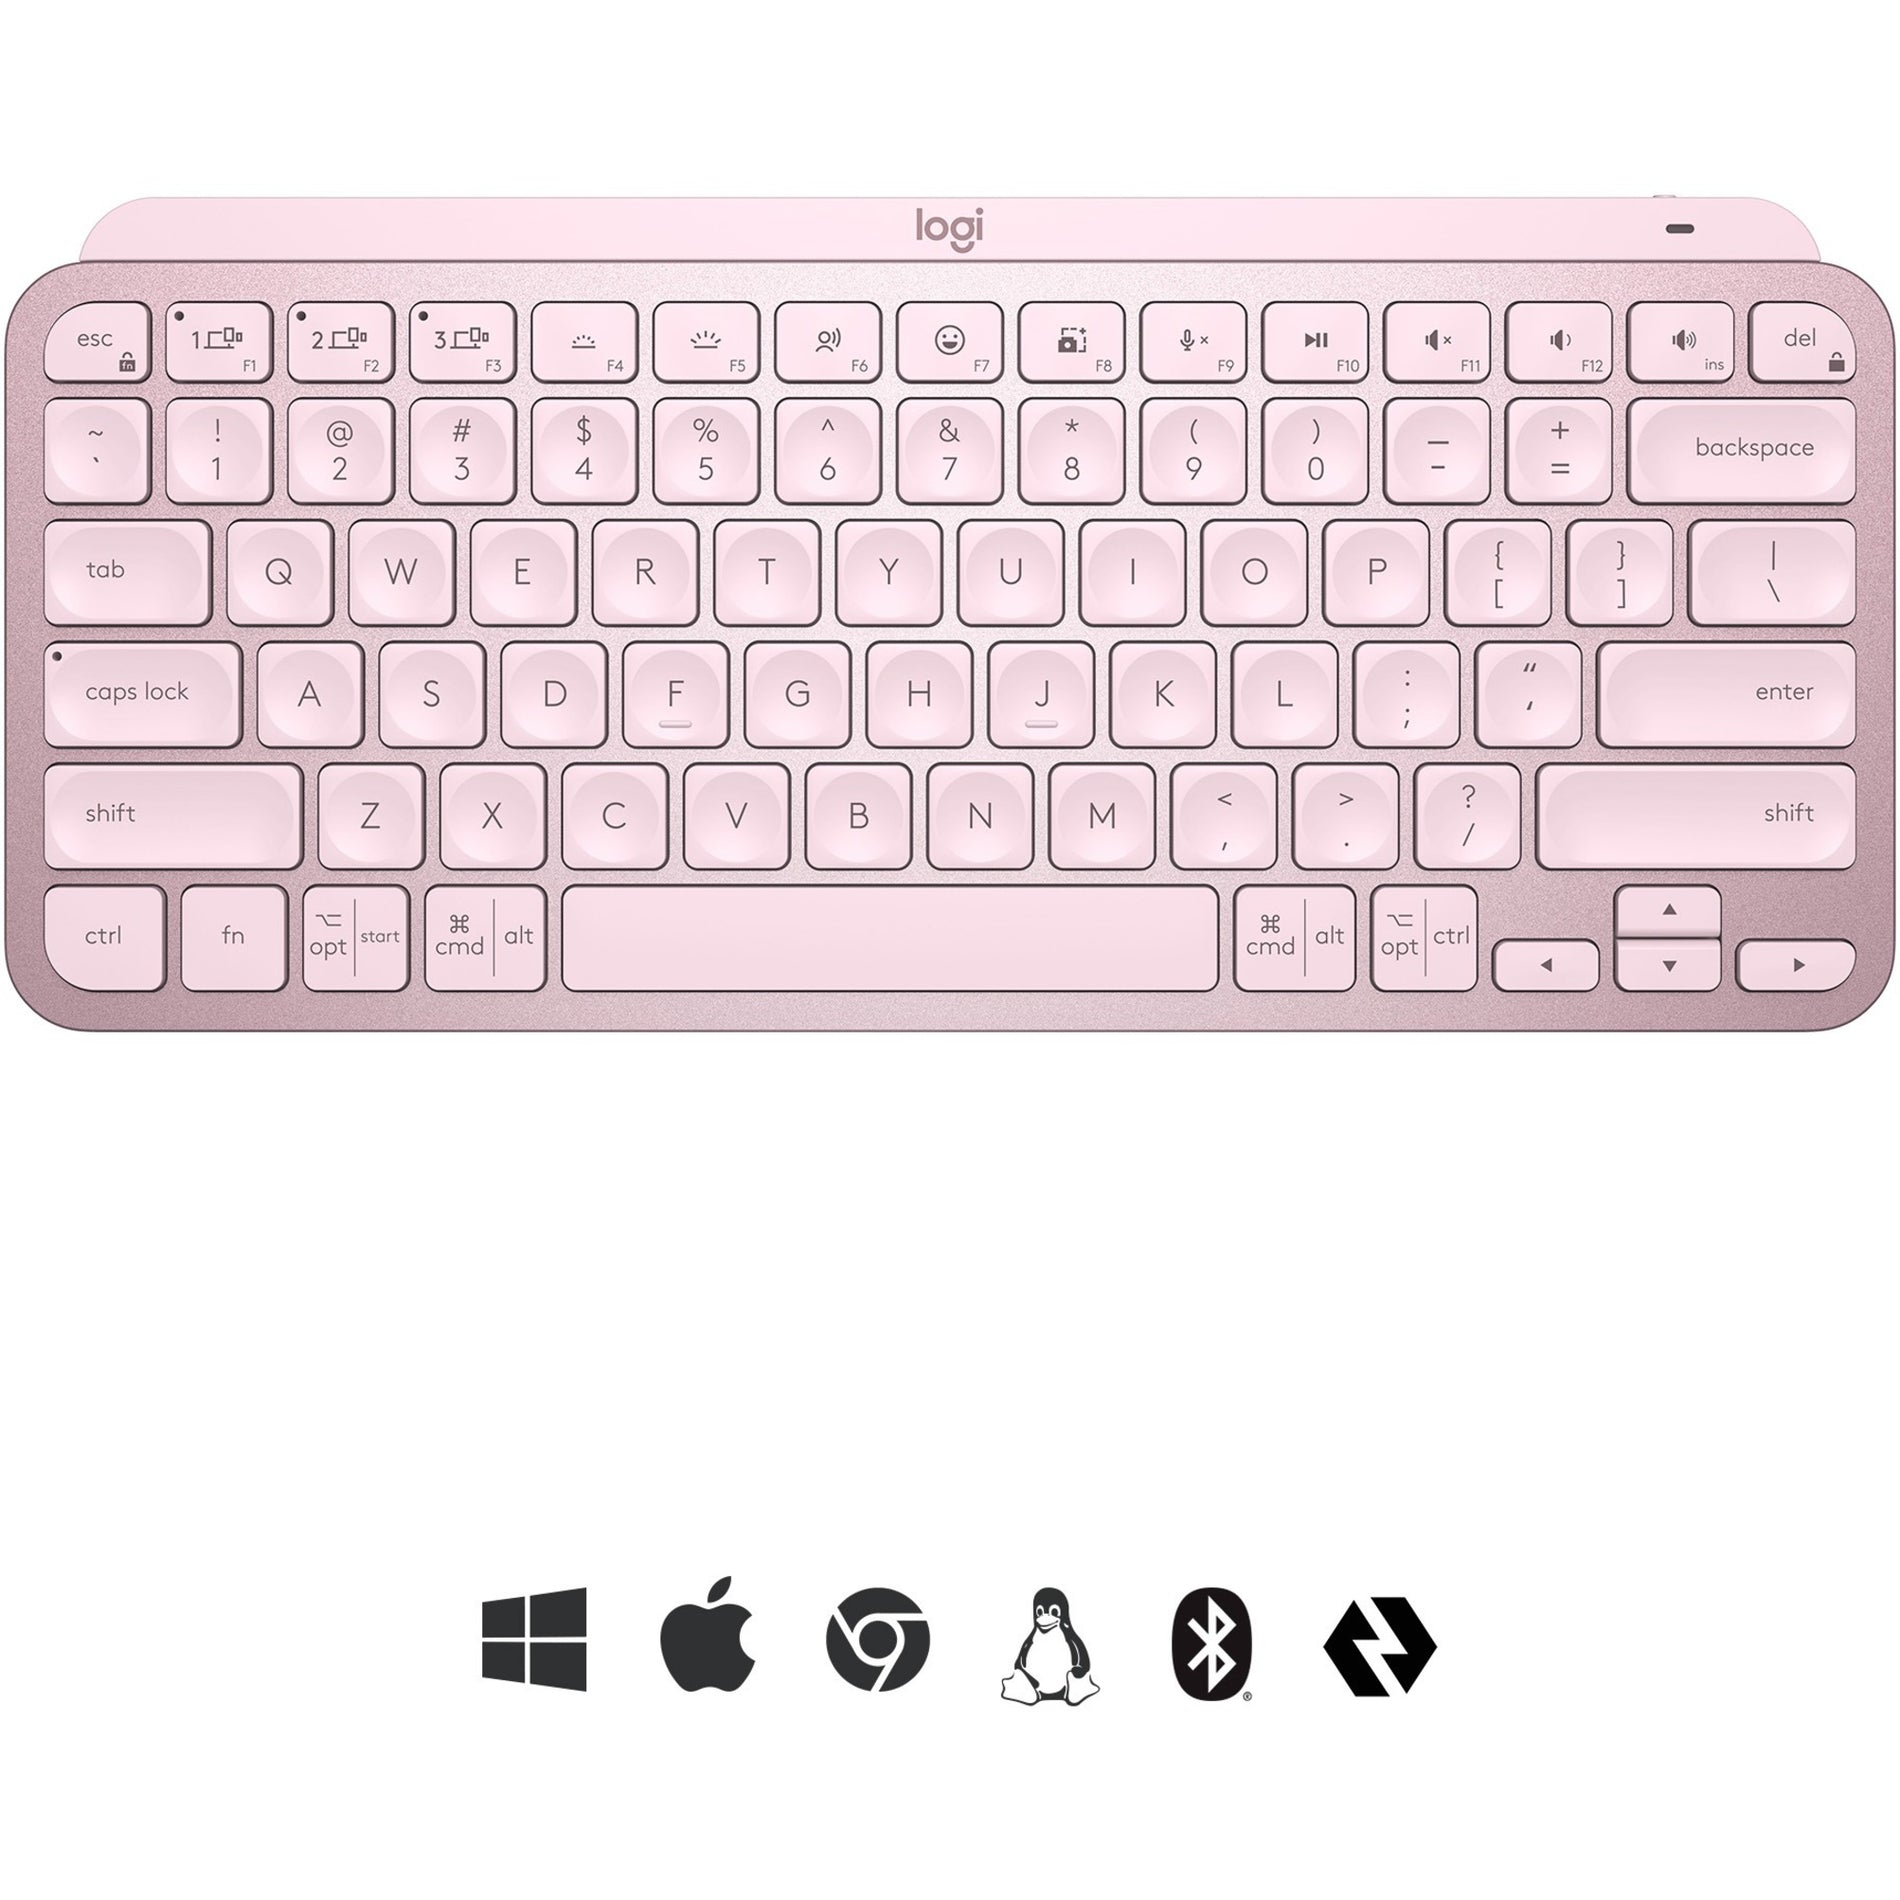 Logitech 920-010474 MX Keys Mini (Rose) Wireless Illuminated Keyboard, Compact and Ergonomic